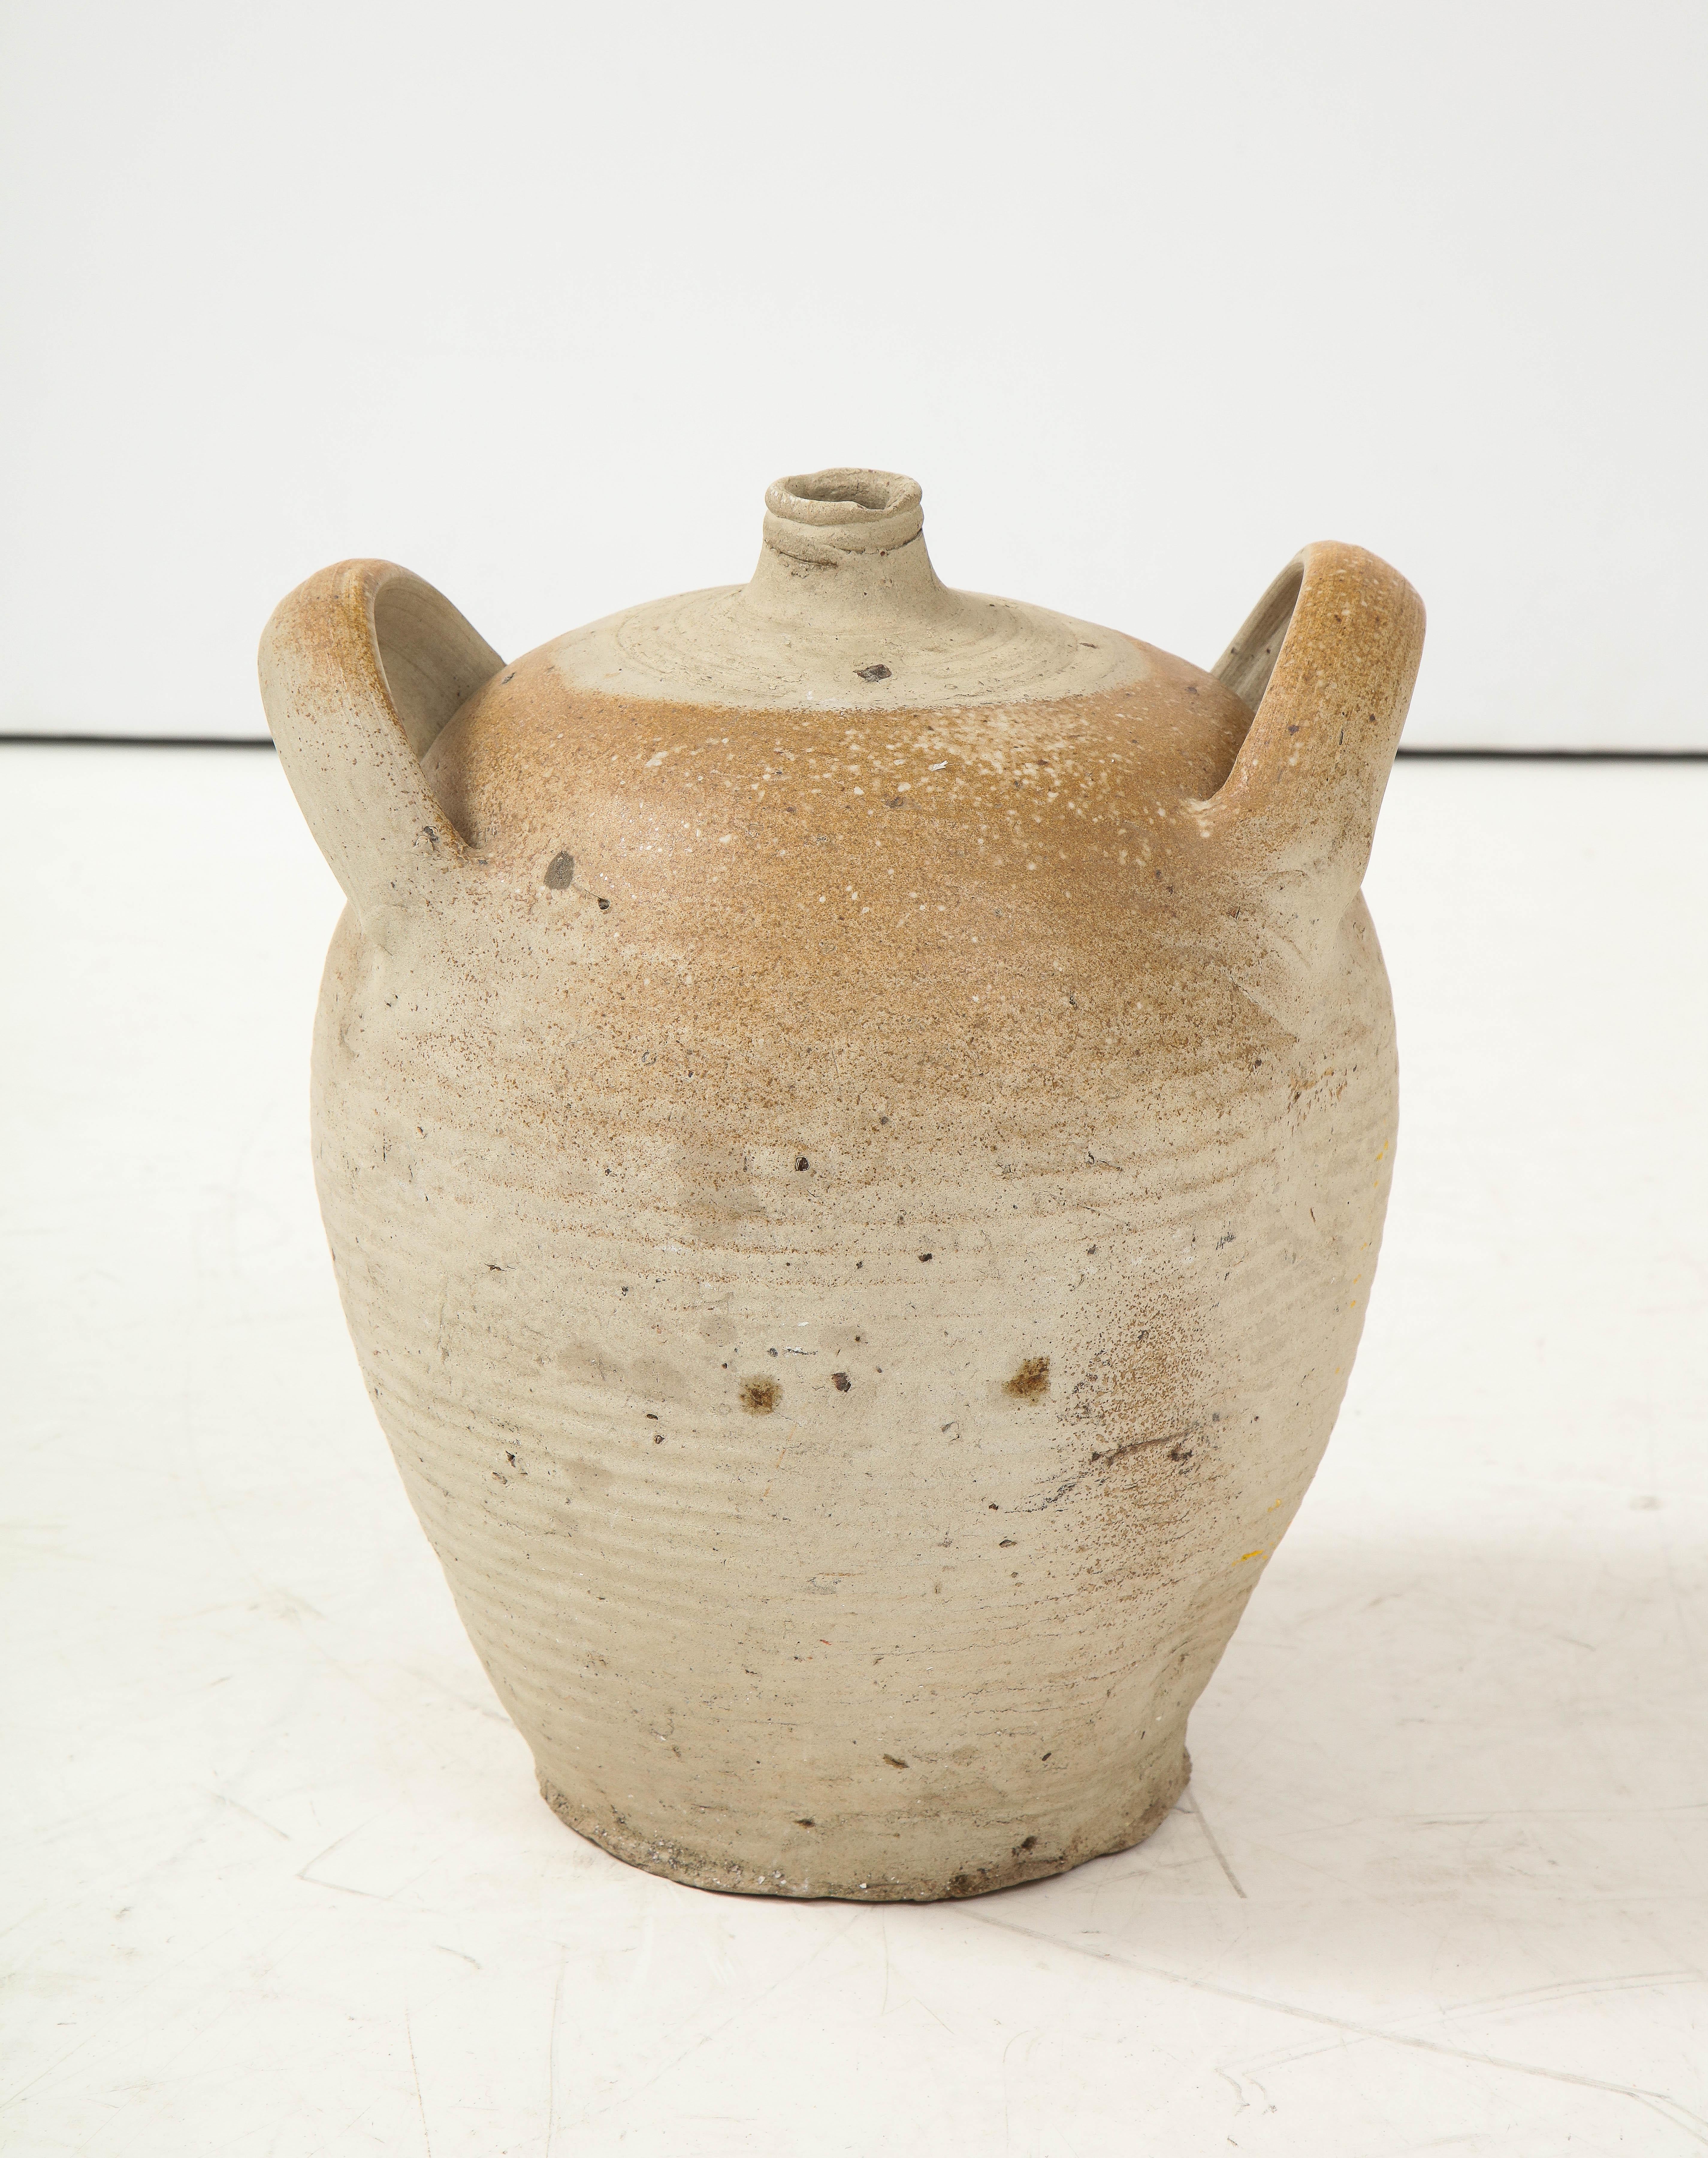 French Provincial Stoneware Vintage Pottery Oil Jar, Jug, Vase or Vessel 8